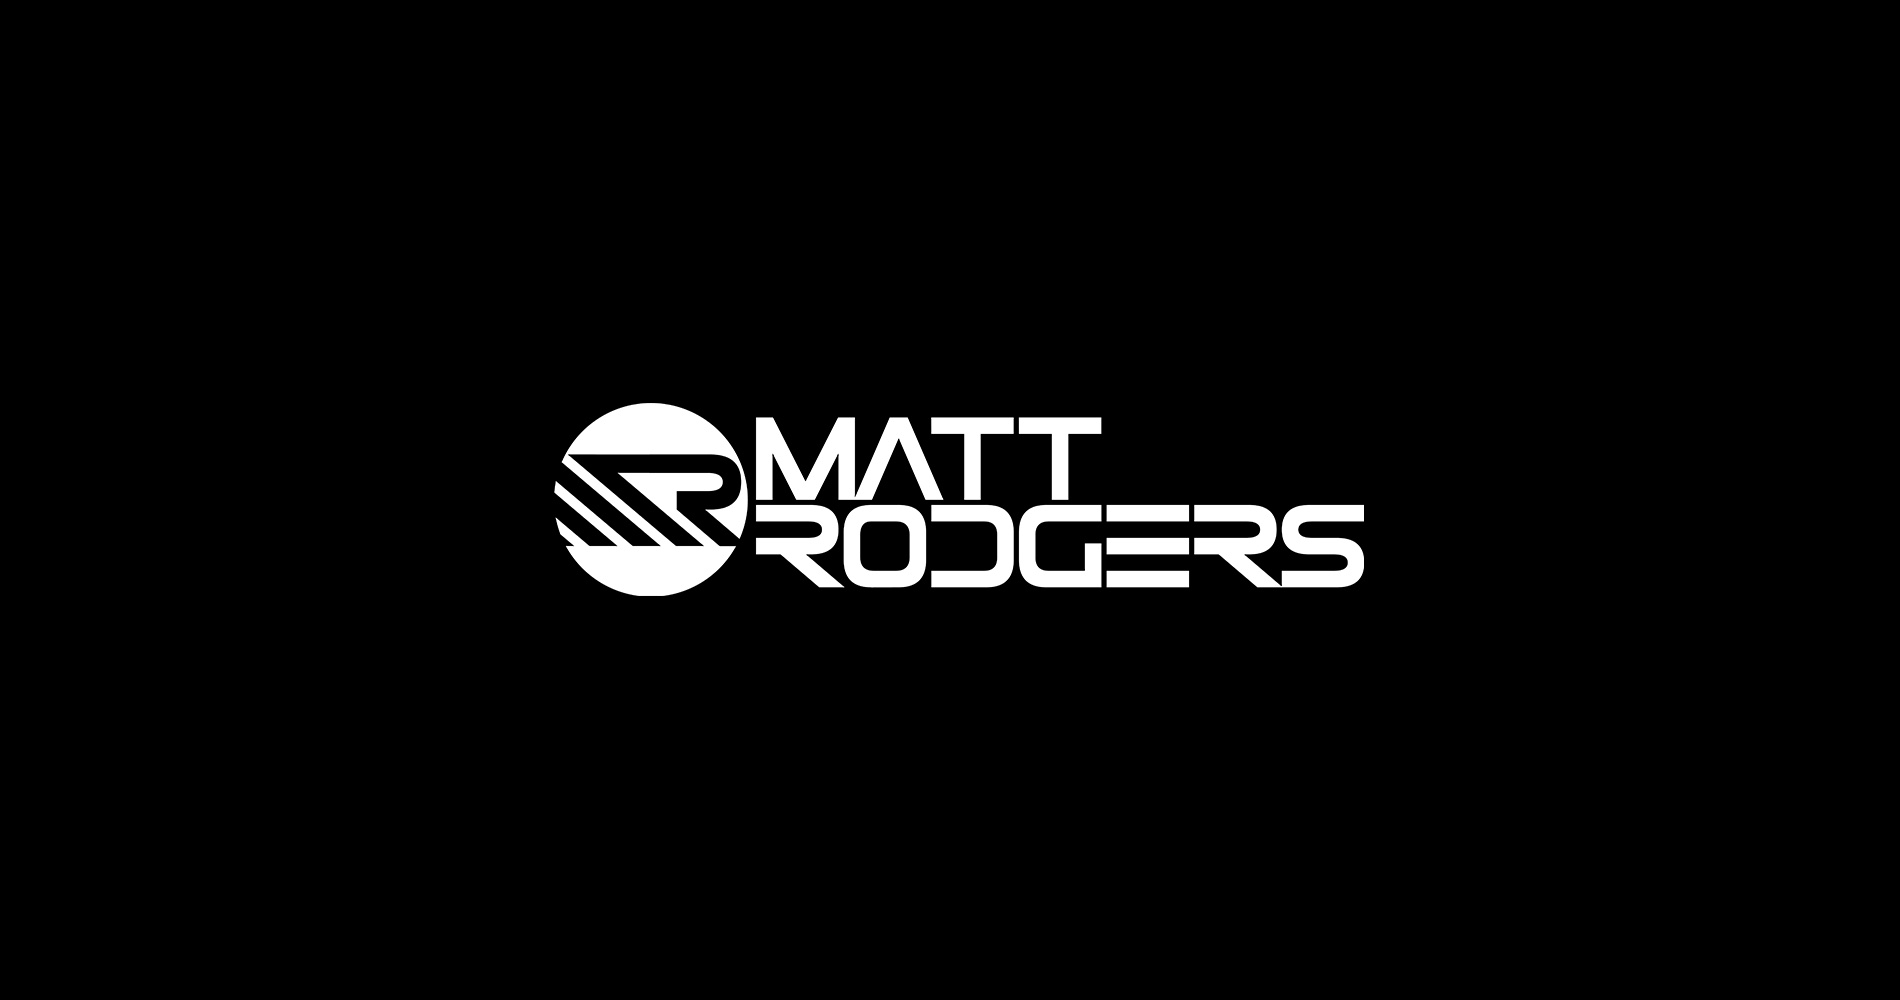 Matt Rodgers – EnTranced